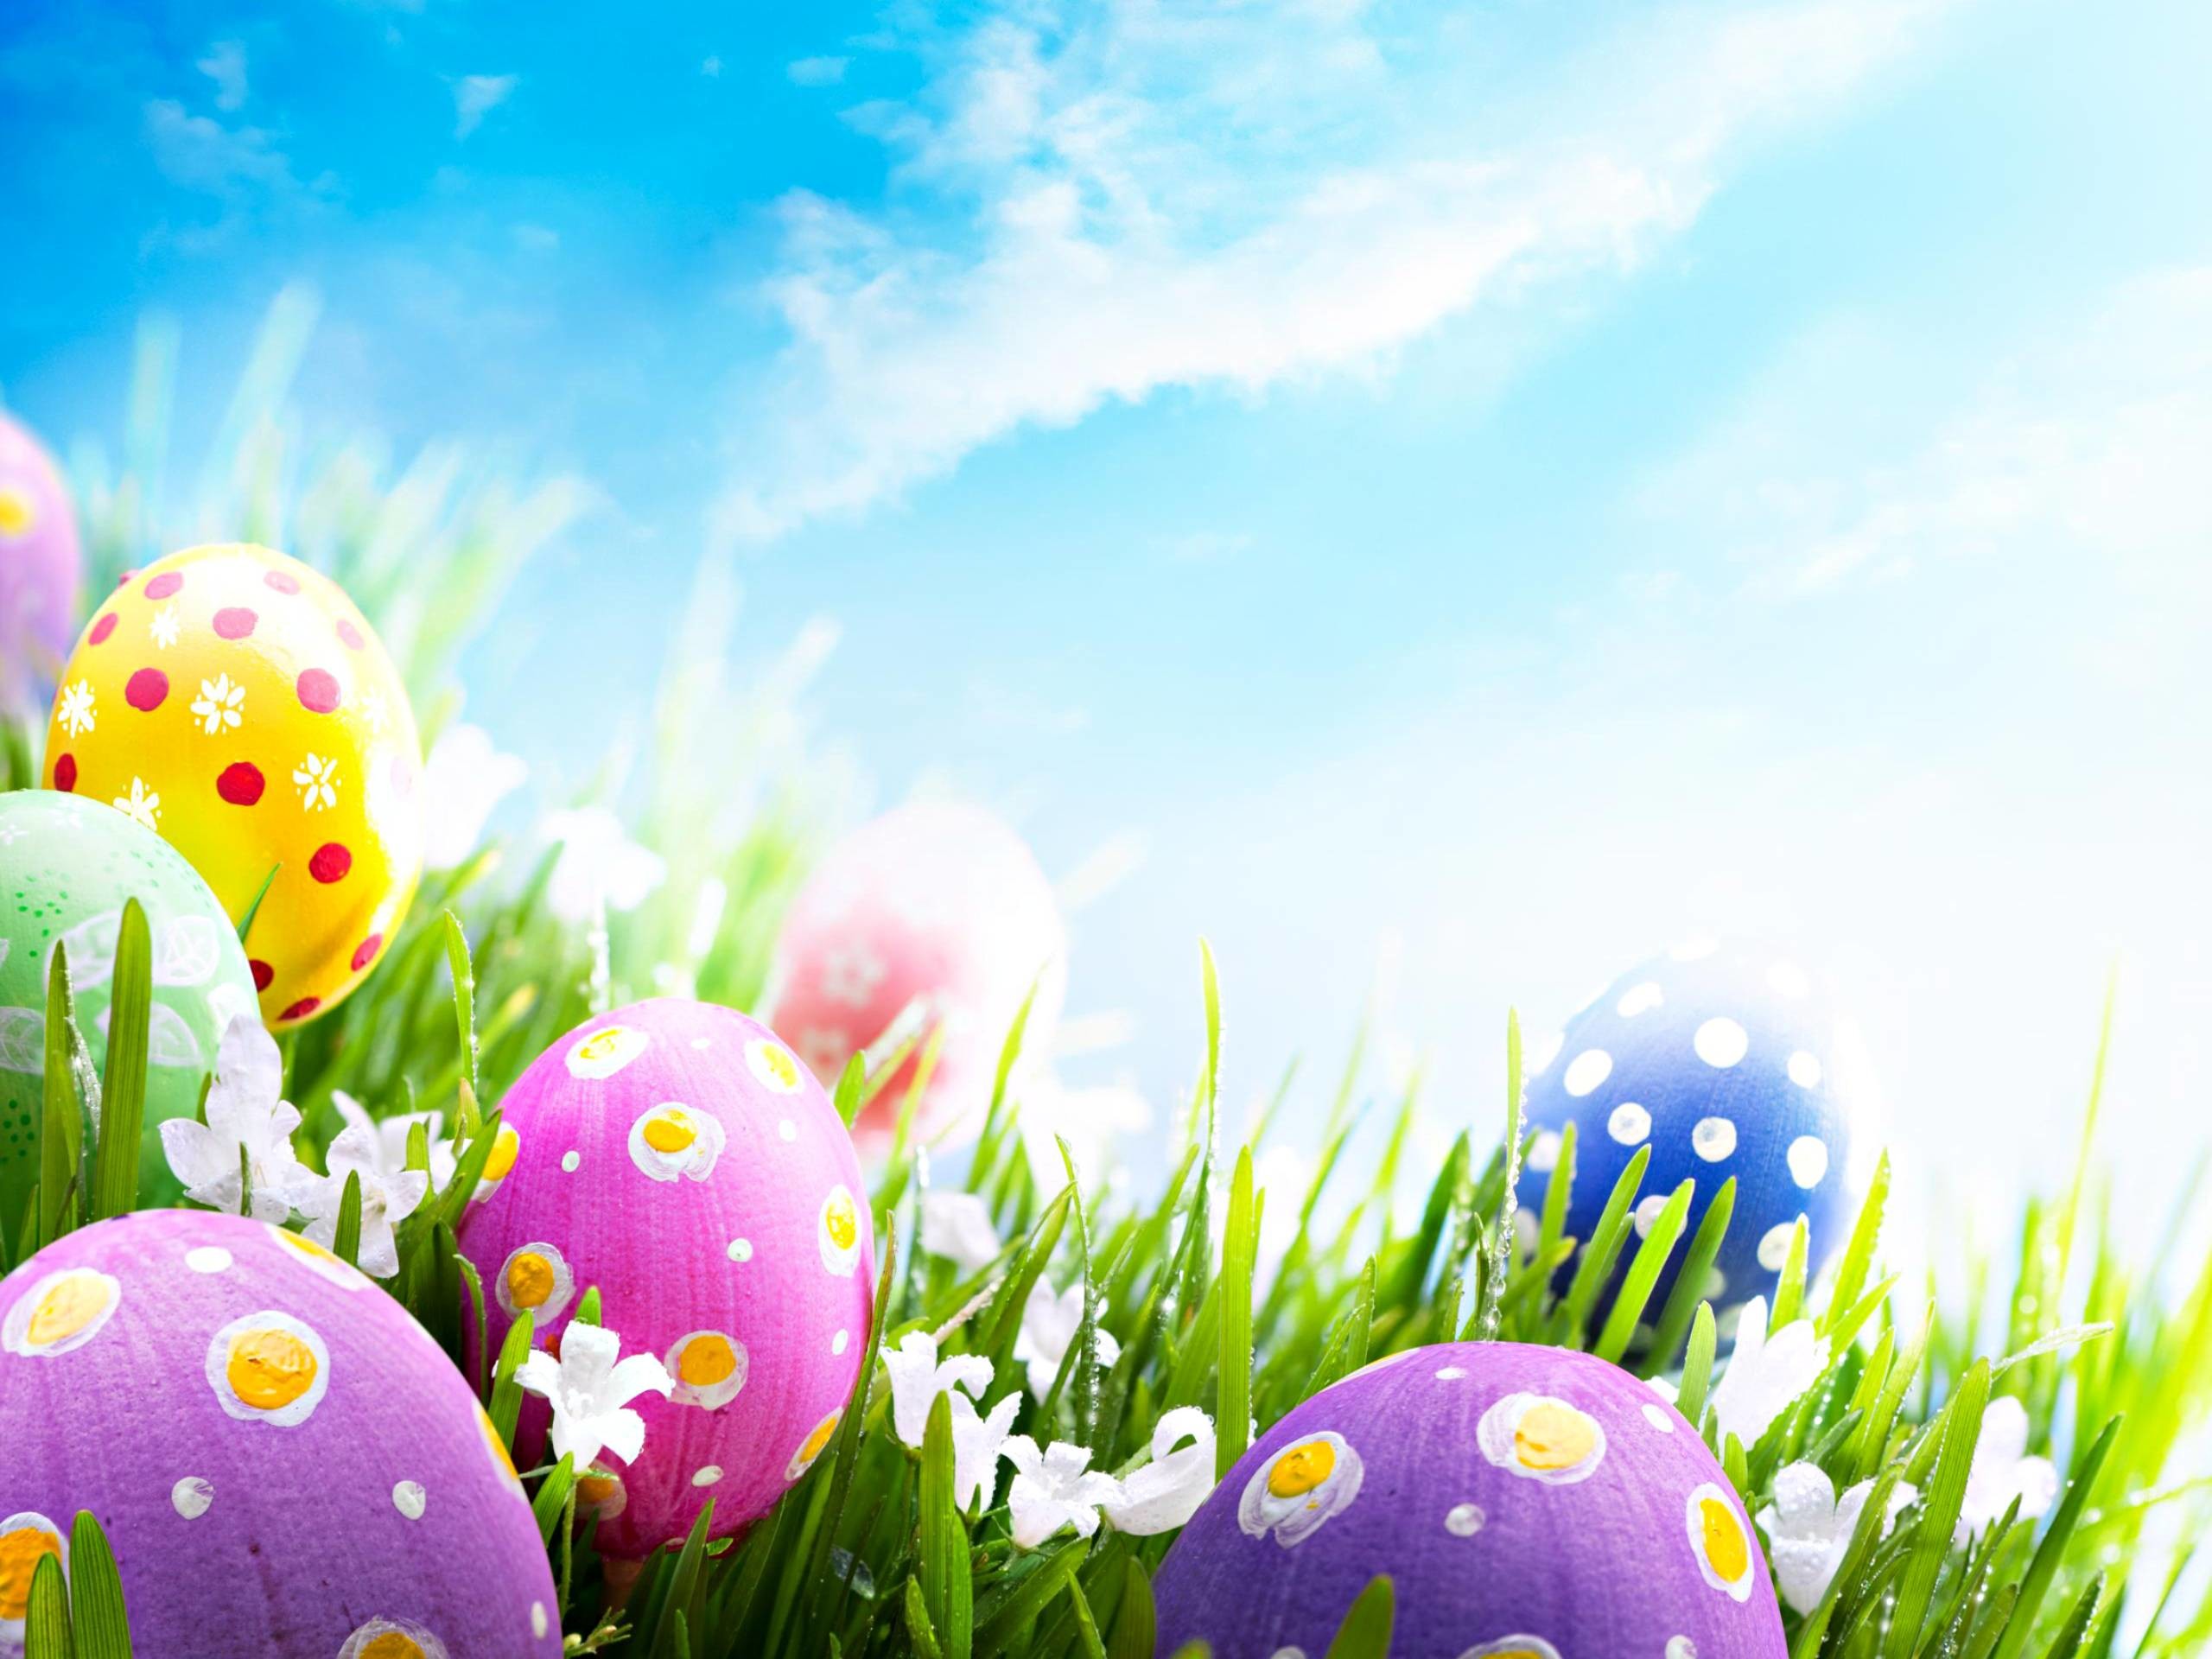 Happy Easter Backgrounds for Desktop 66 images